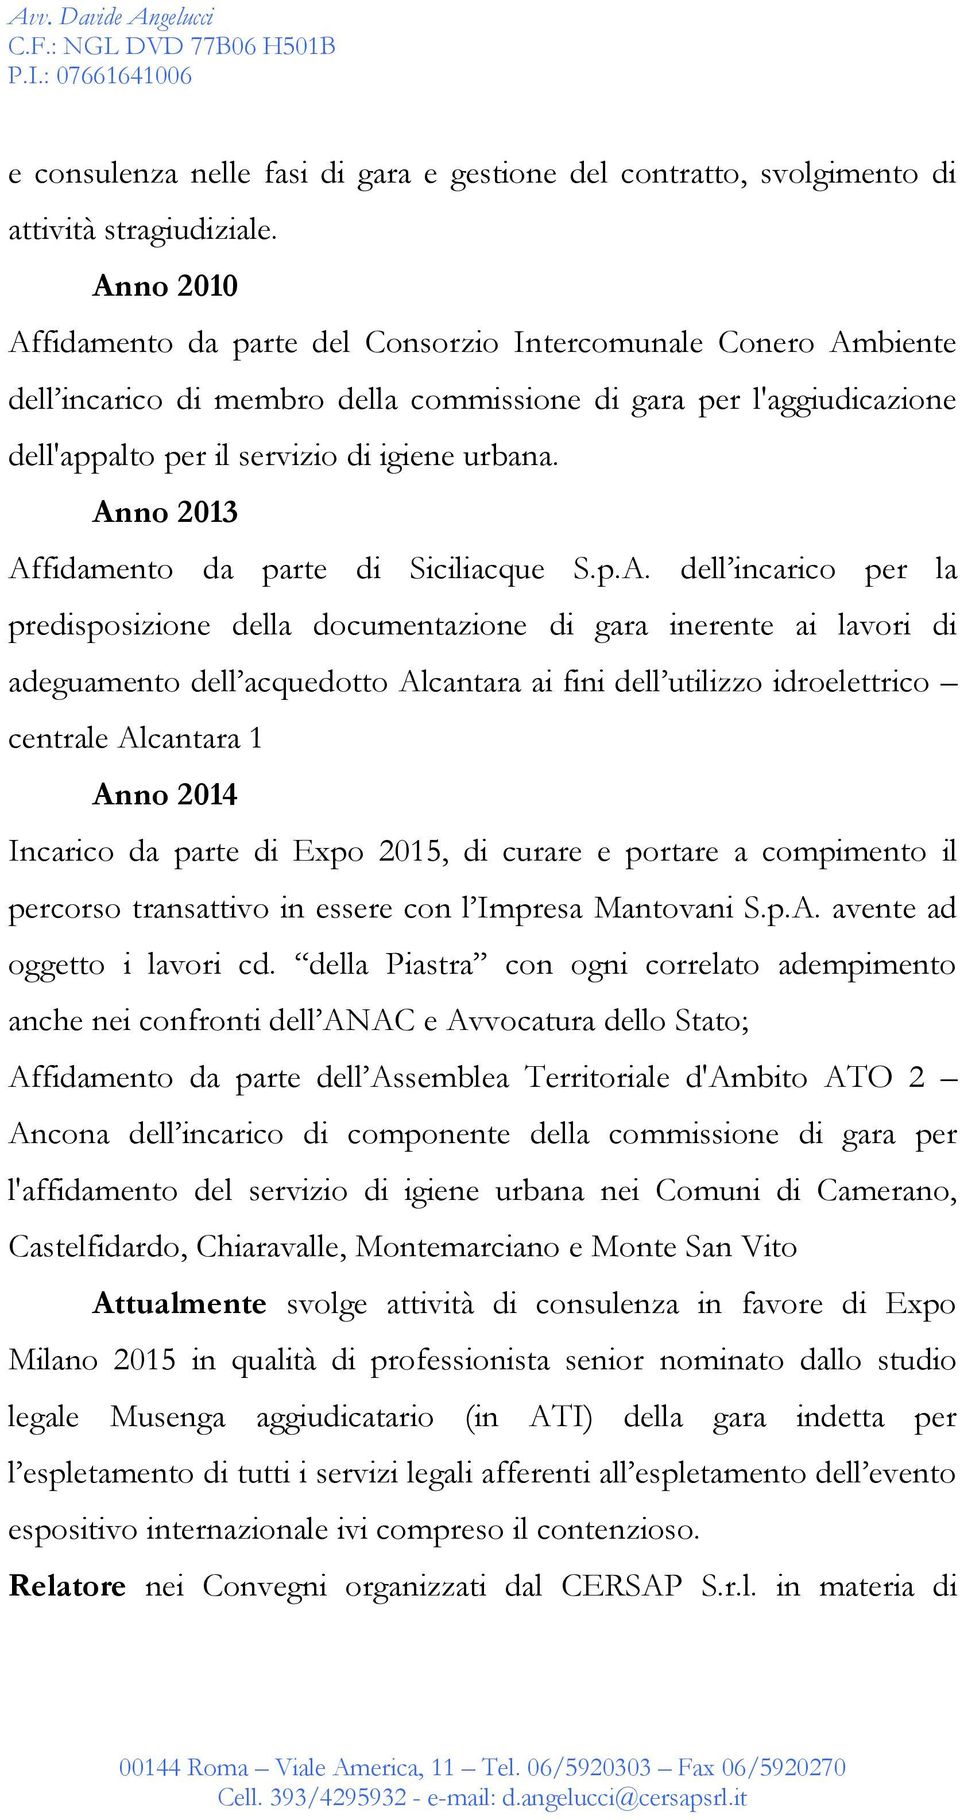 Anno 2013 Affidamento da parte di Siciliacque S.p.A. dell incarico per la predisposizione della documentazione di gara inerente ai lavori di adeguamento dell acquedotto Alcantara ai fini dell